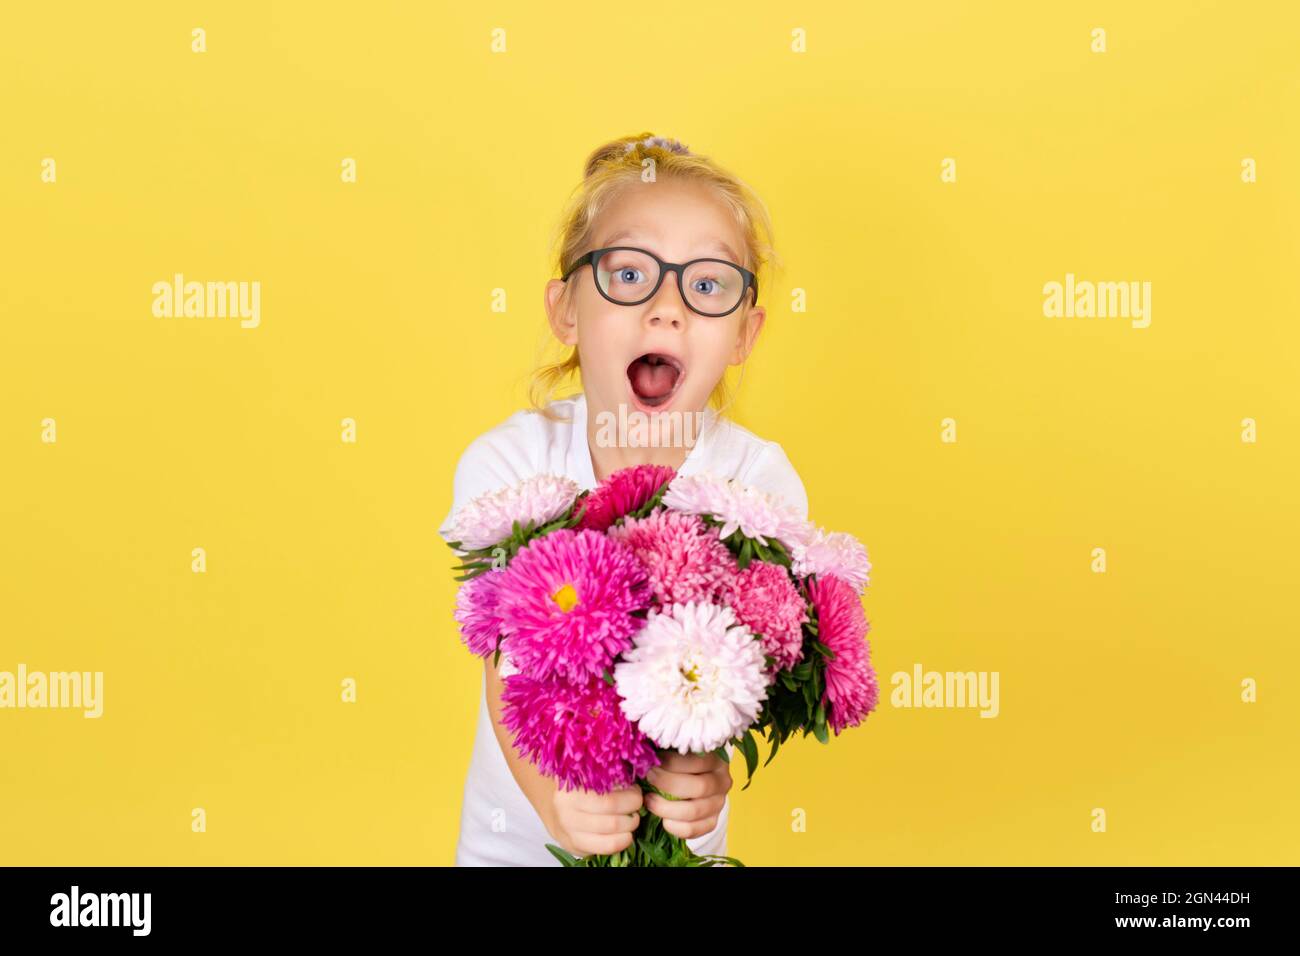 Enfant fille tenant un bouquet de belles fleurs d'aster rose et blanc isolées sur fond jaune. Concept international de la fête des mères. Banque D'Images